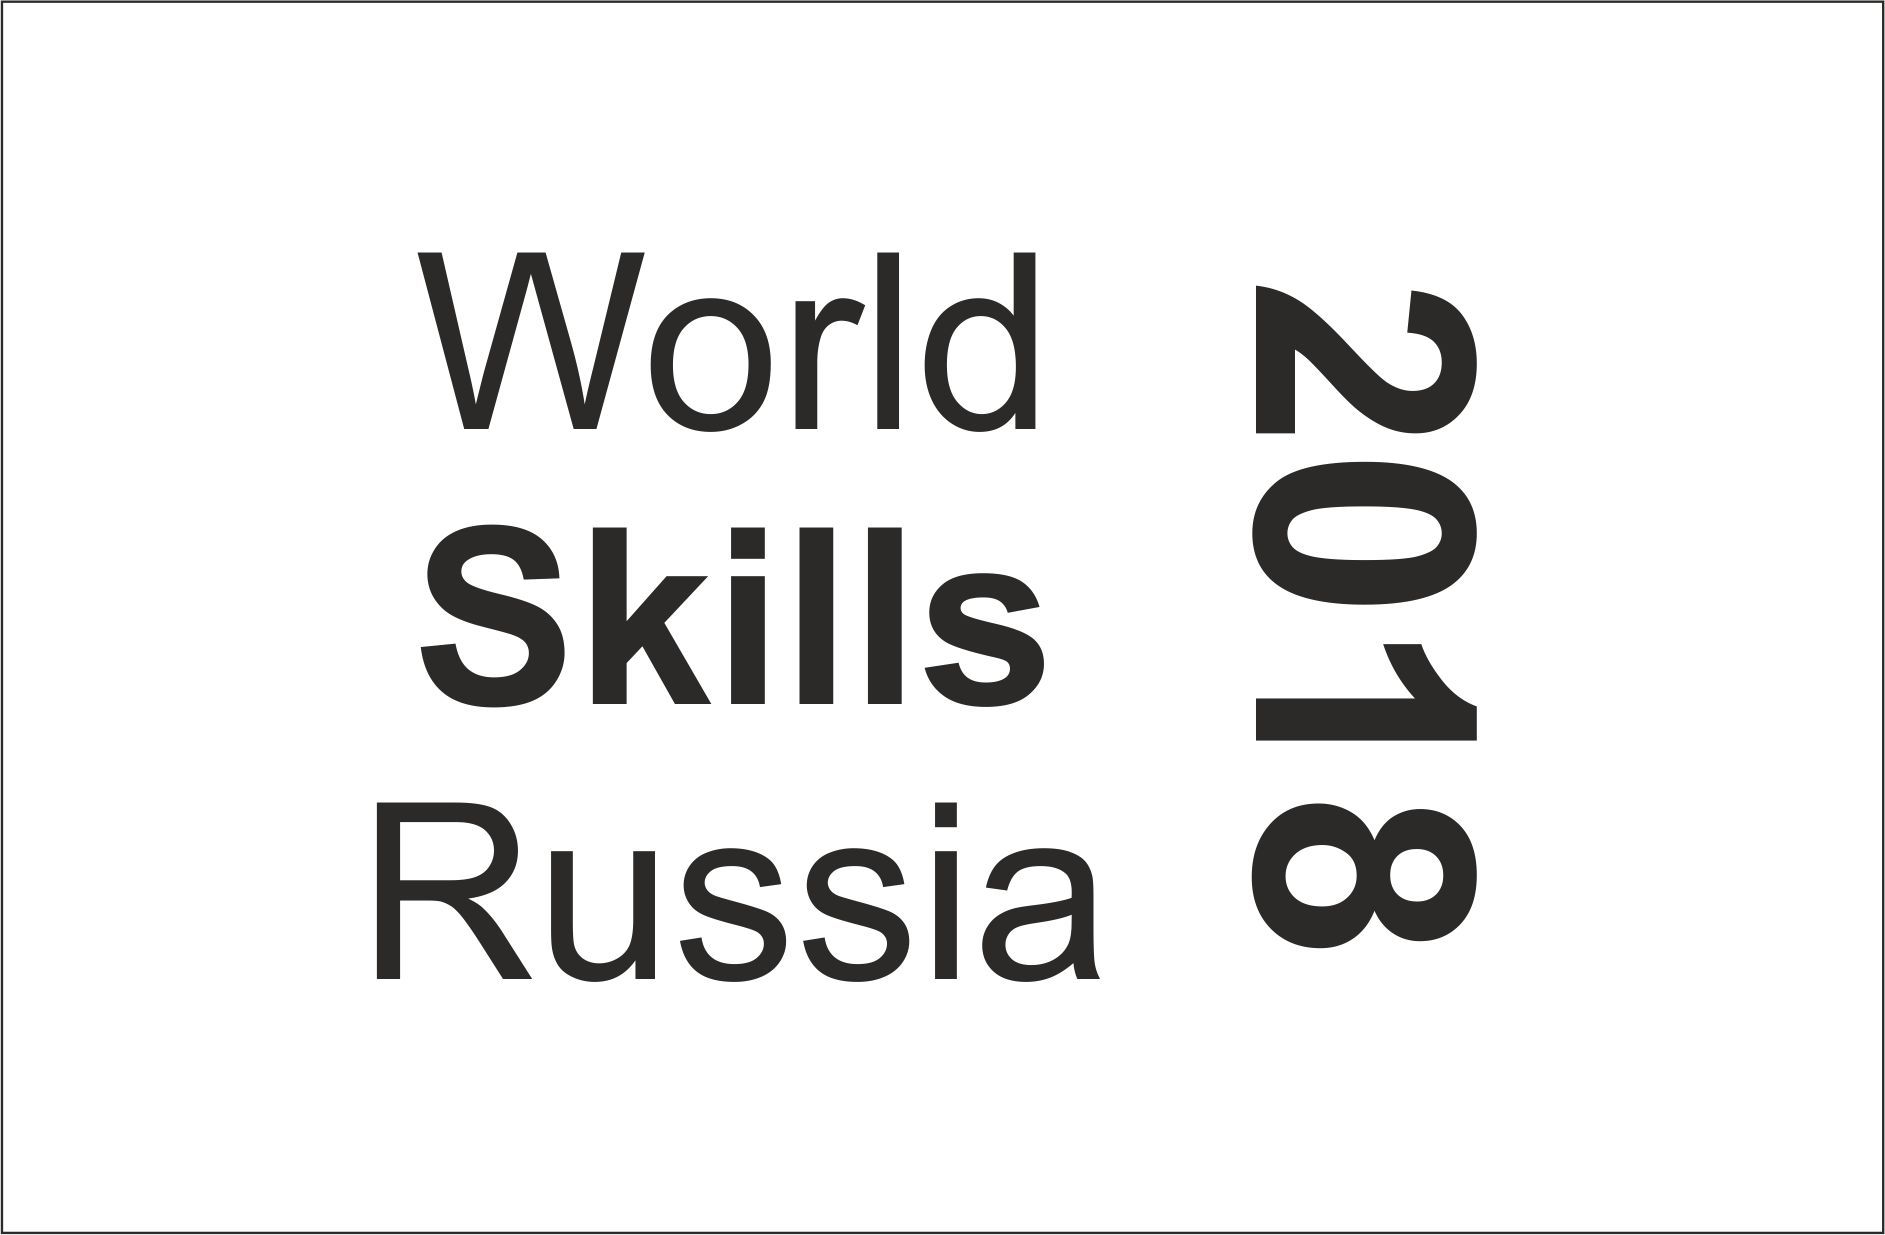 Студент из Татарстана стал победителем одной из компетенций WorldSkills Russia — 2018